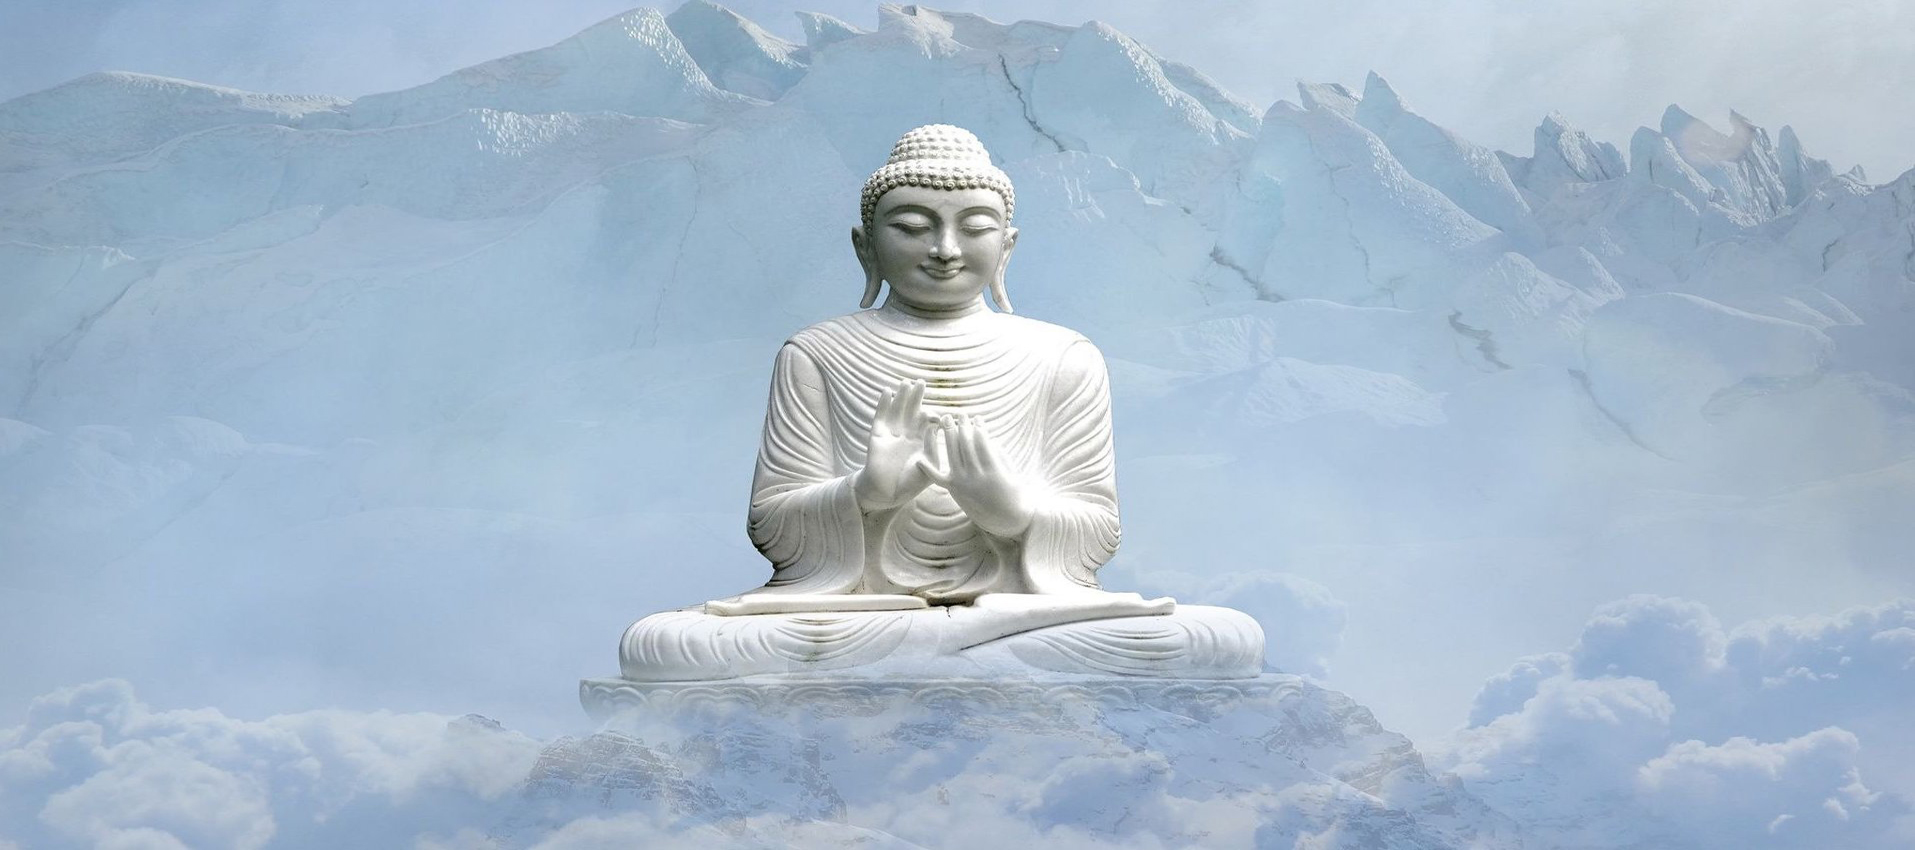 pix buddha snow